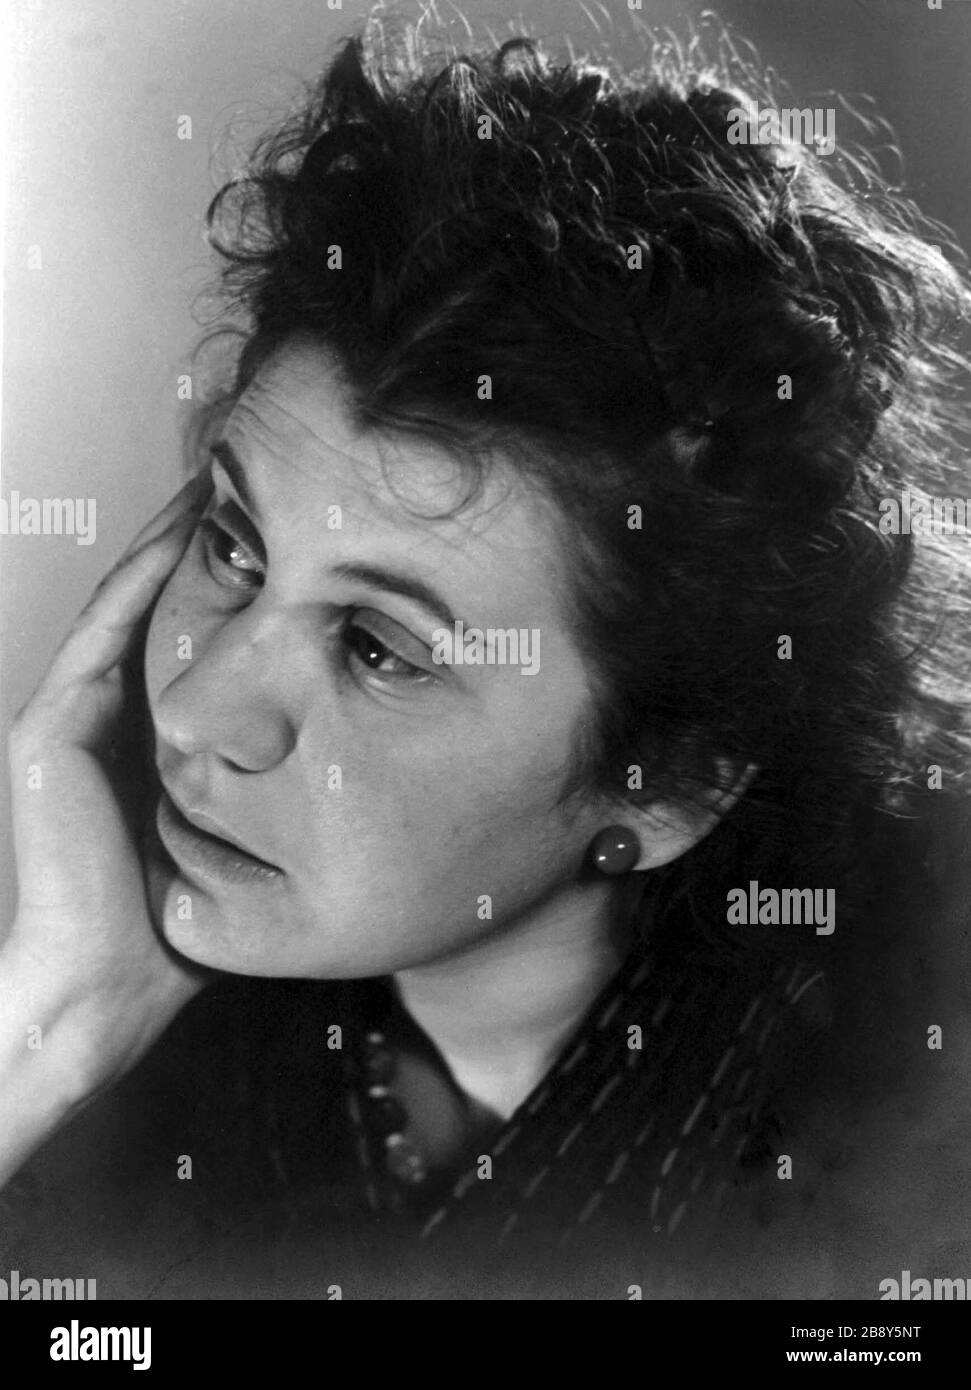 Etty Hillesum (1914-1943), joven judía neerlandesa. Murió en 1943 a los 29 años en el campo de exterminio nazi de Auschwitz (1943). Durante los últimos dos años de su vida escribió un diario y unas cartas desde el Campo de Westerbork antes de llegar a Auschwitz. Stock Photo